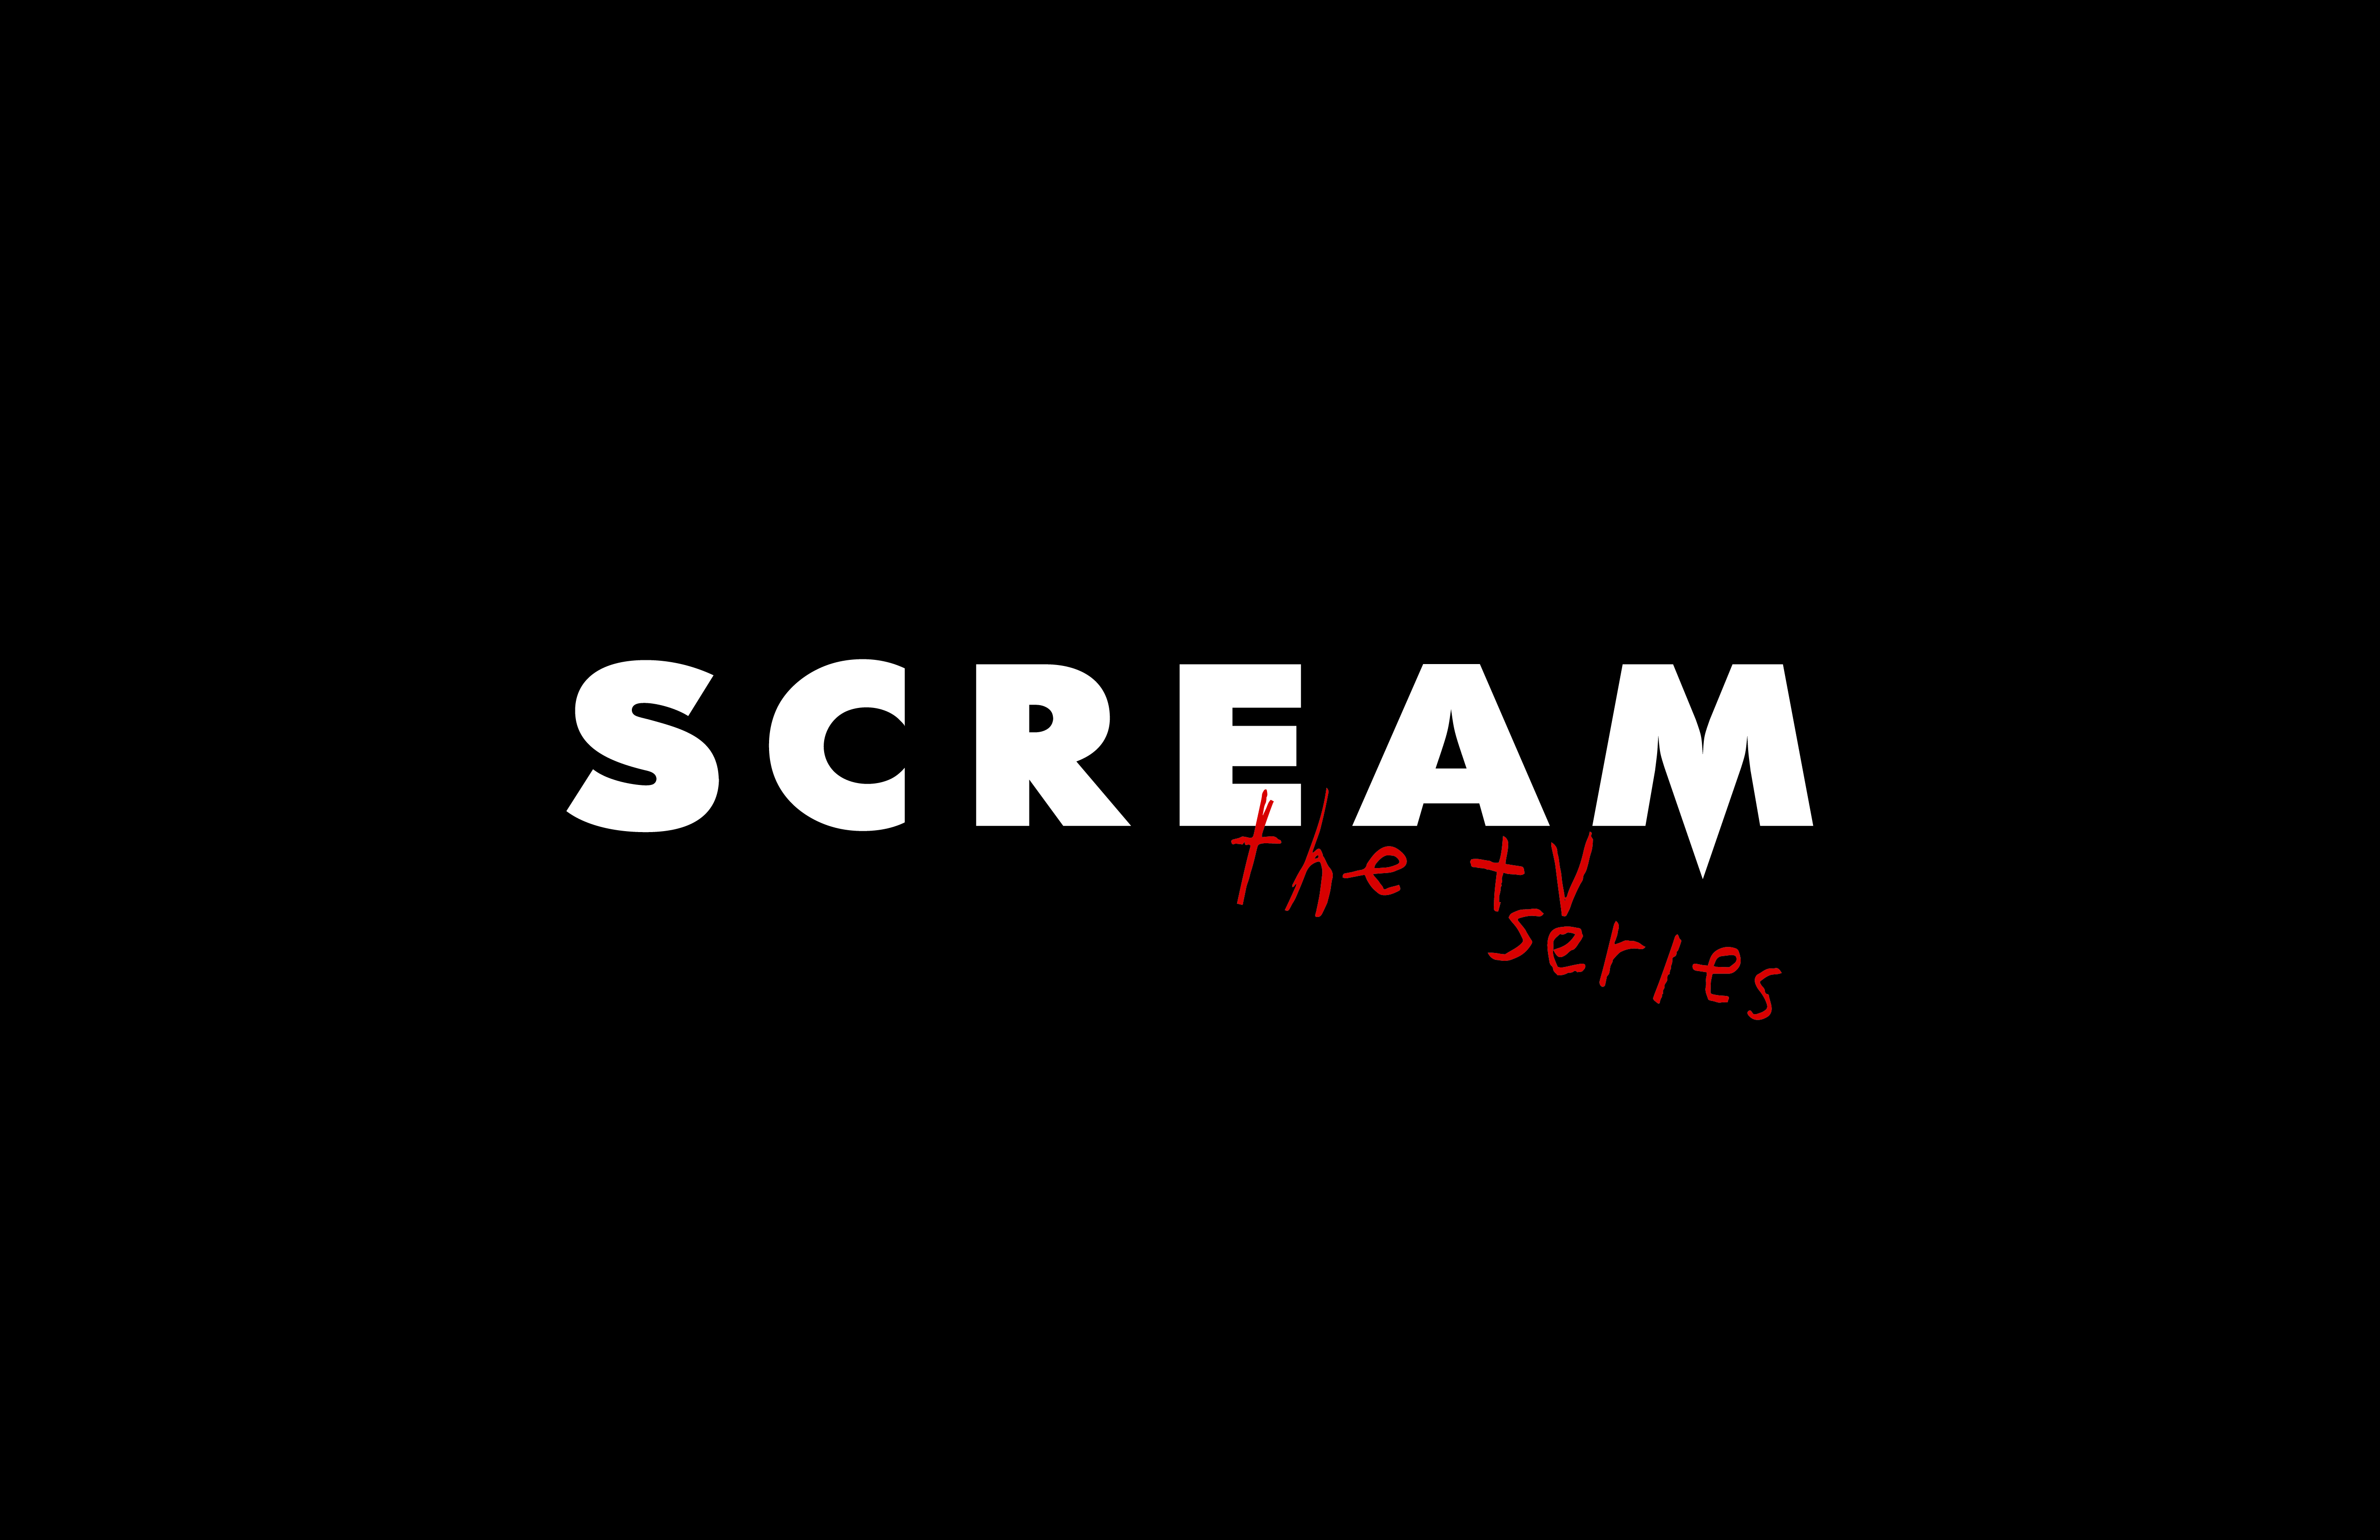 Scream 2.04- “Happy Birthday to Me”